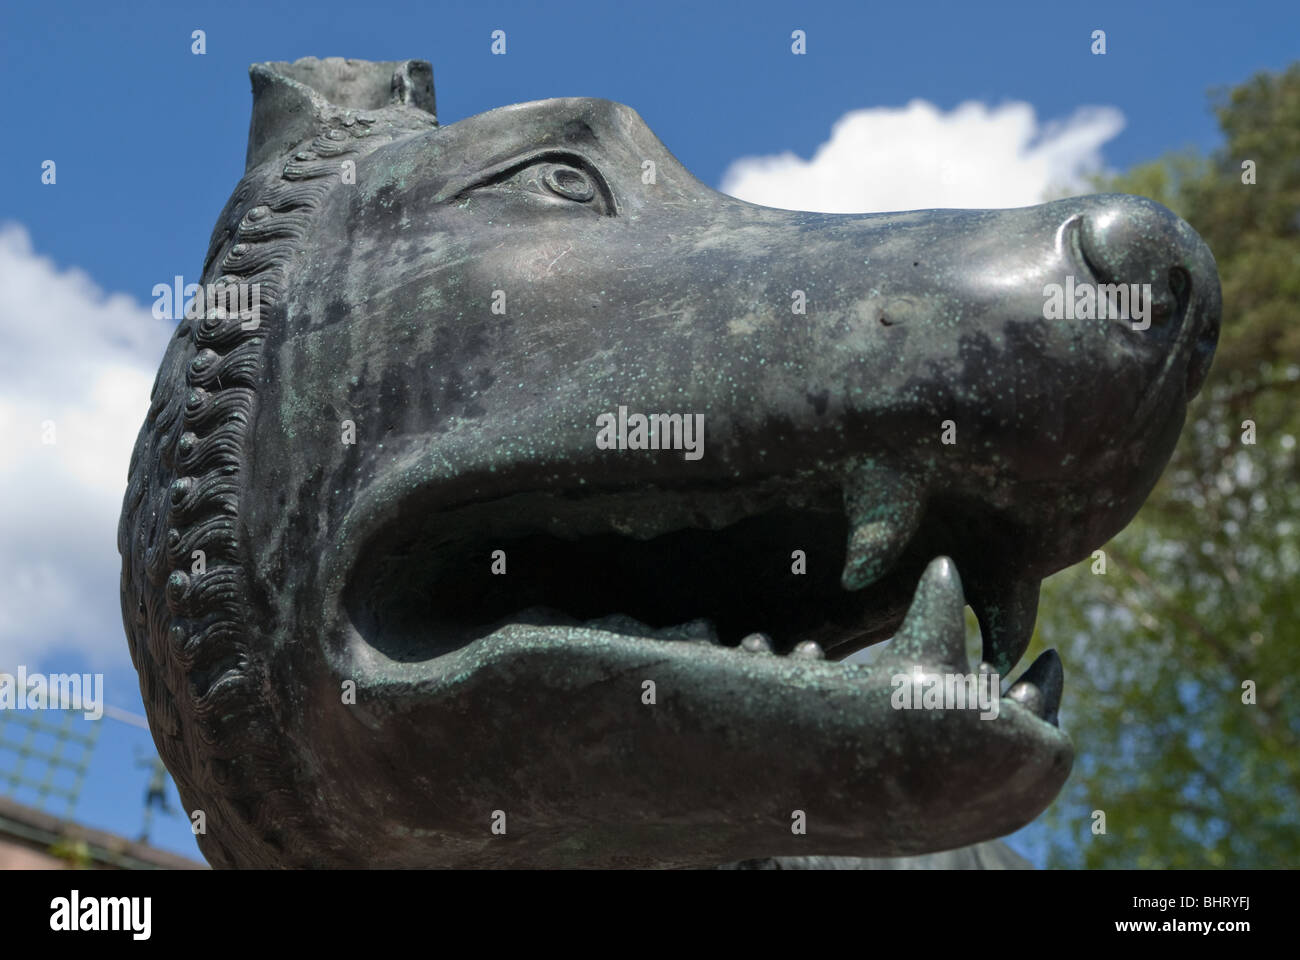 La tête du loup sculpture de Carl milles Photo Stock - Alamy